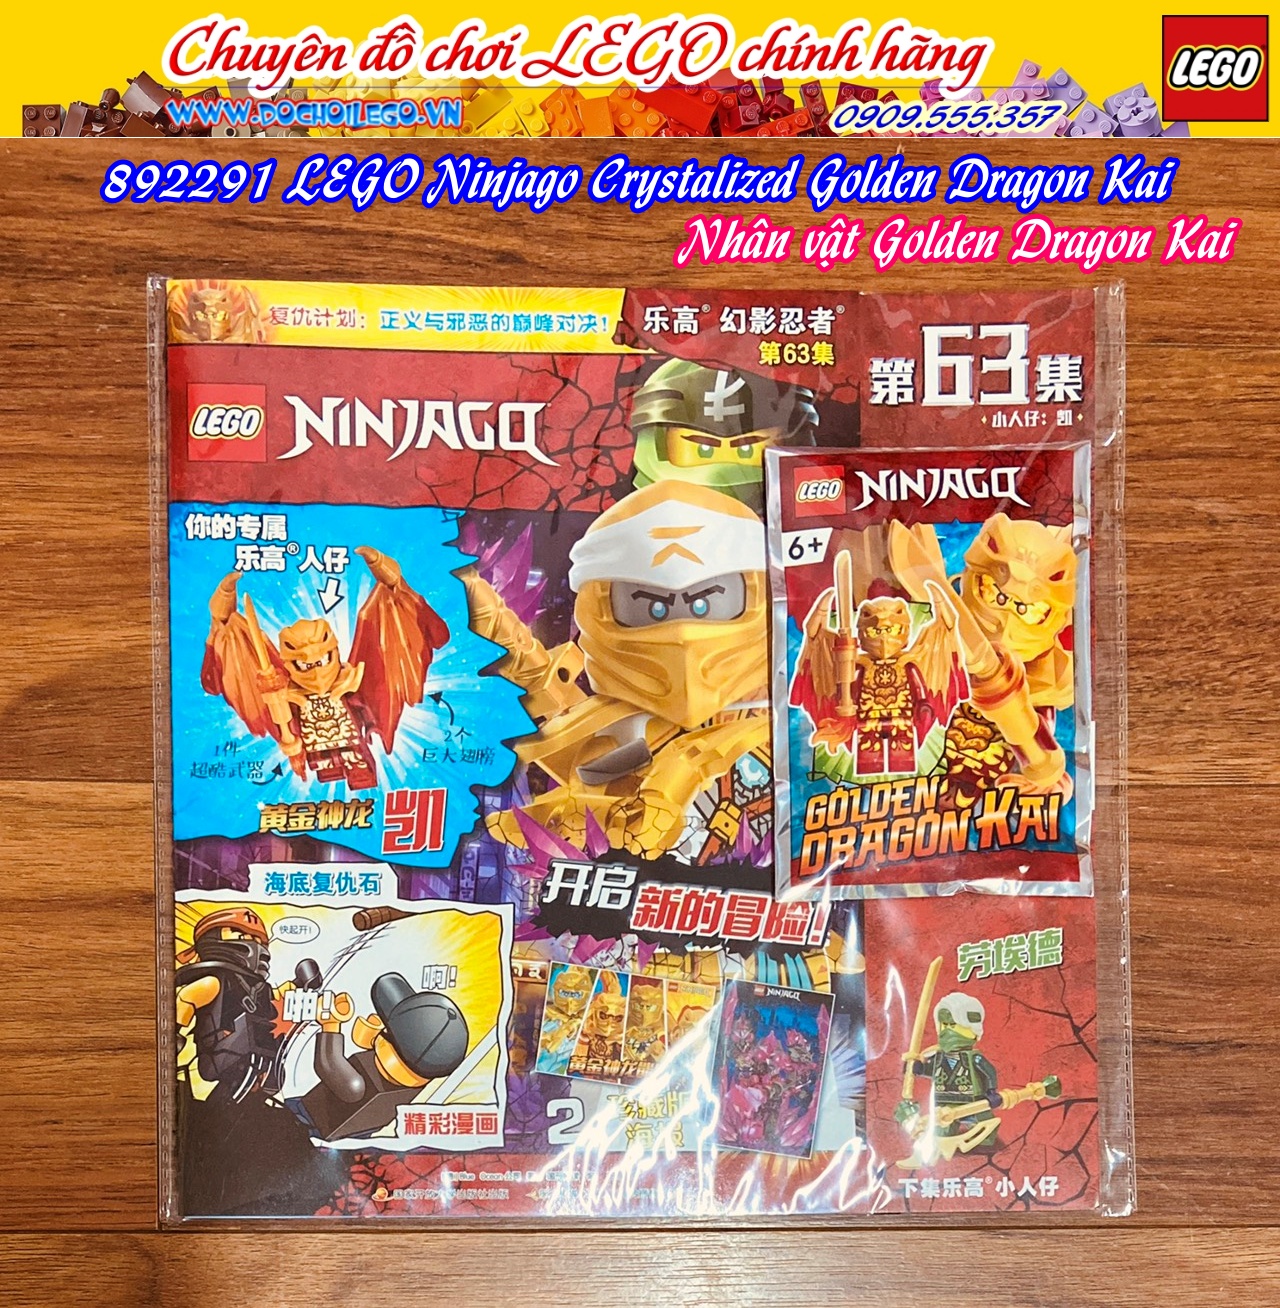 892291 LEGO Ninjago Crystalized Golden Dragon Kai - Nhân vật Kai rồng vàng  - Tạp chí LEGO Ninjago có kèm Minifigures - Phiên bản tiếng Trung - Hàng chính hãng LEGO